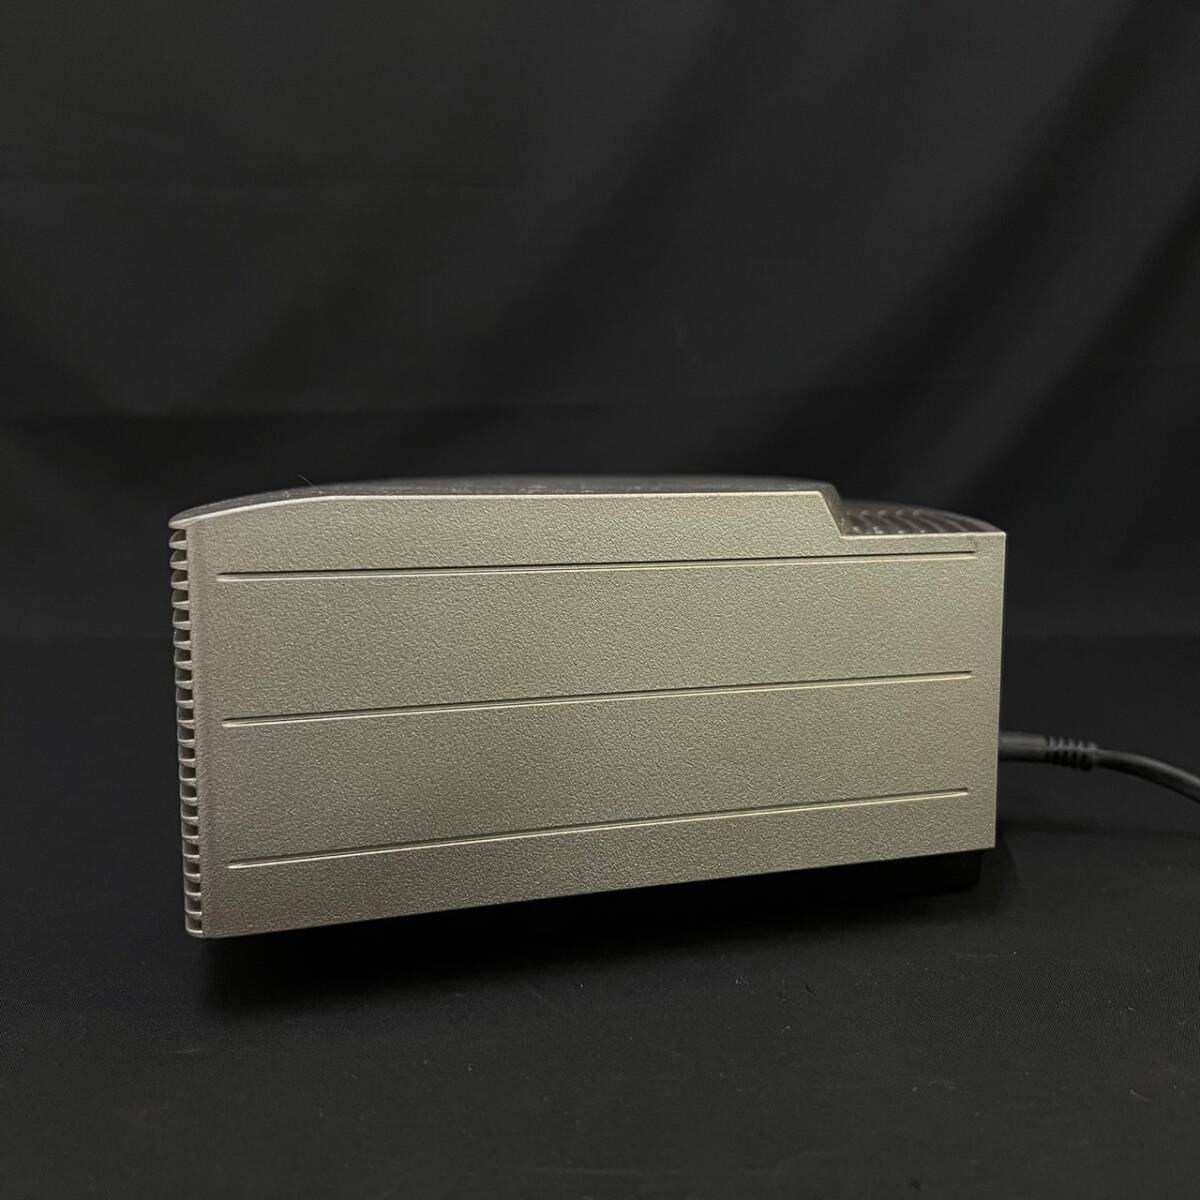 BDg130I 100 BOSE AWRCCB ボーズ Wave music system ウェーブミュージックシステム CDプレーヤー リモコン付の画像3